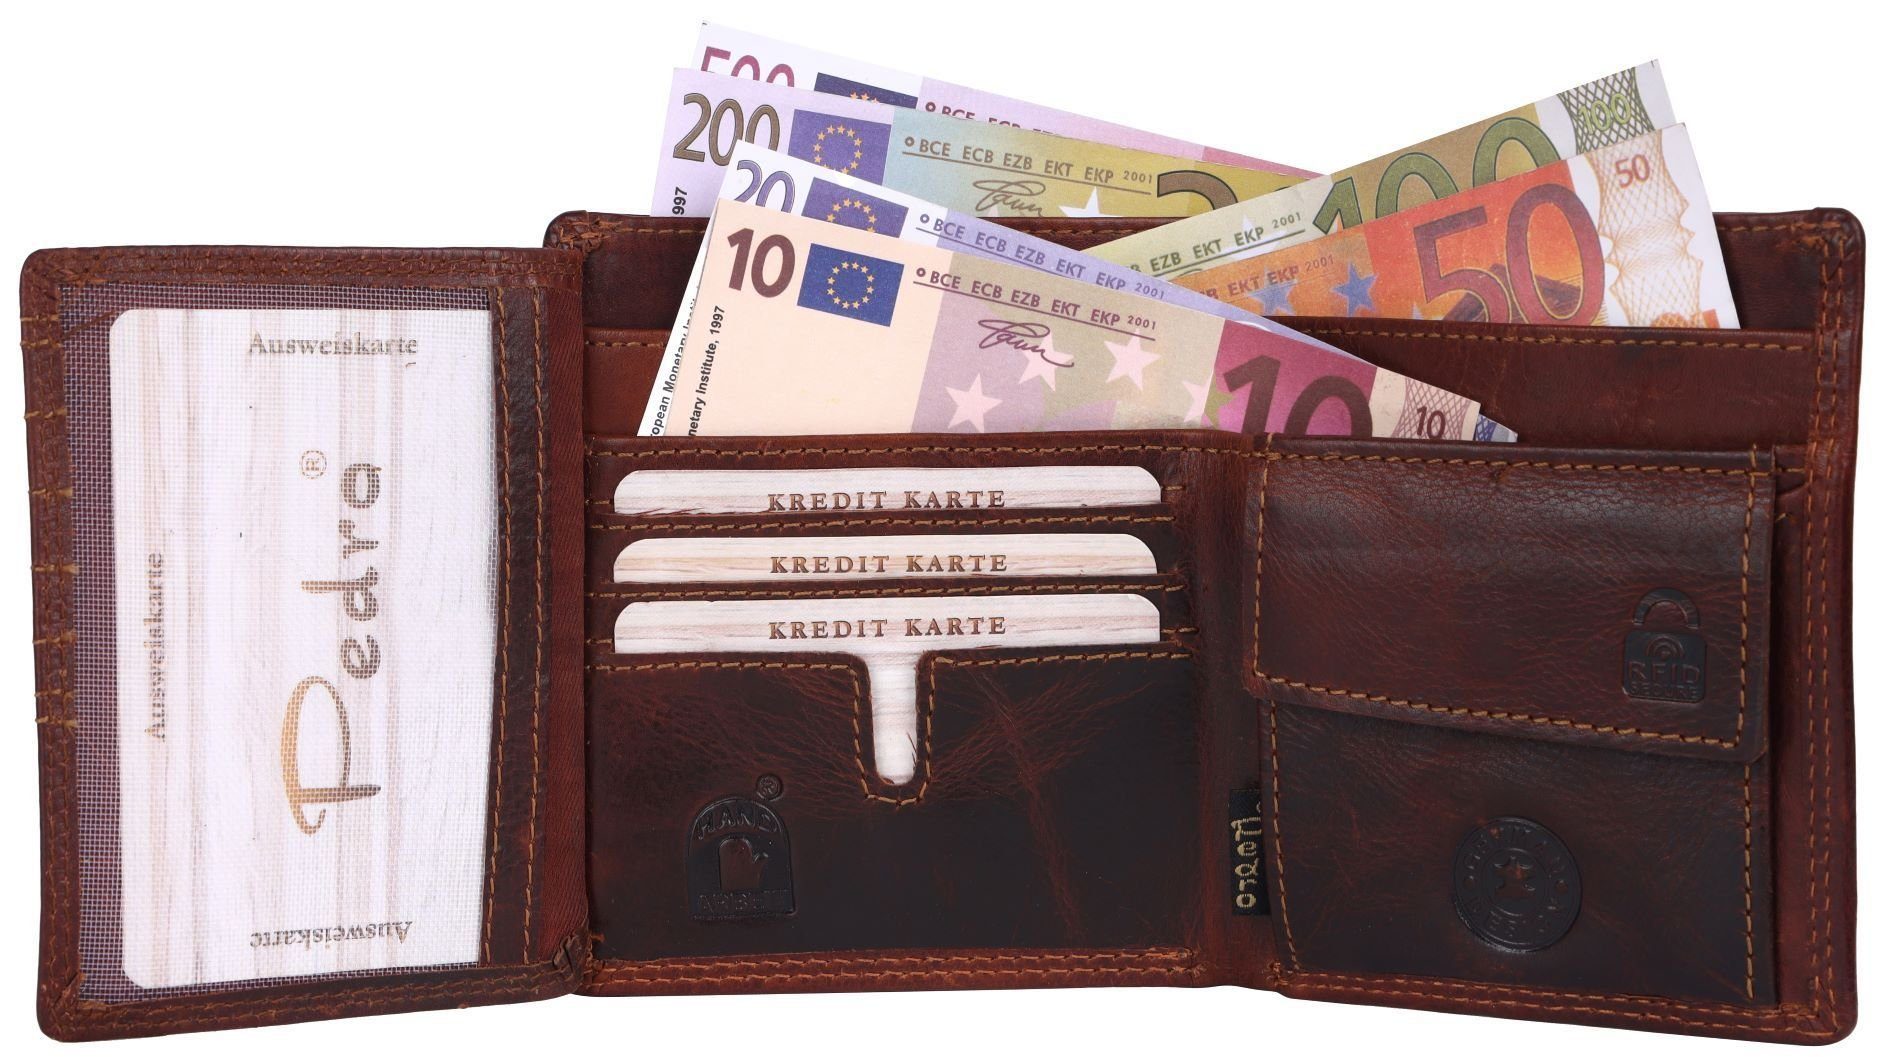 Herren SHG Brieftasche Leder Börse Geldbörse Schutz Portemonnaie, Kleingeldfach RFID